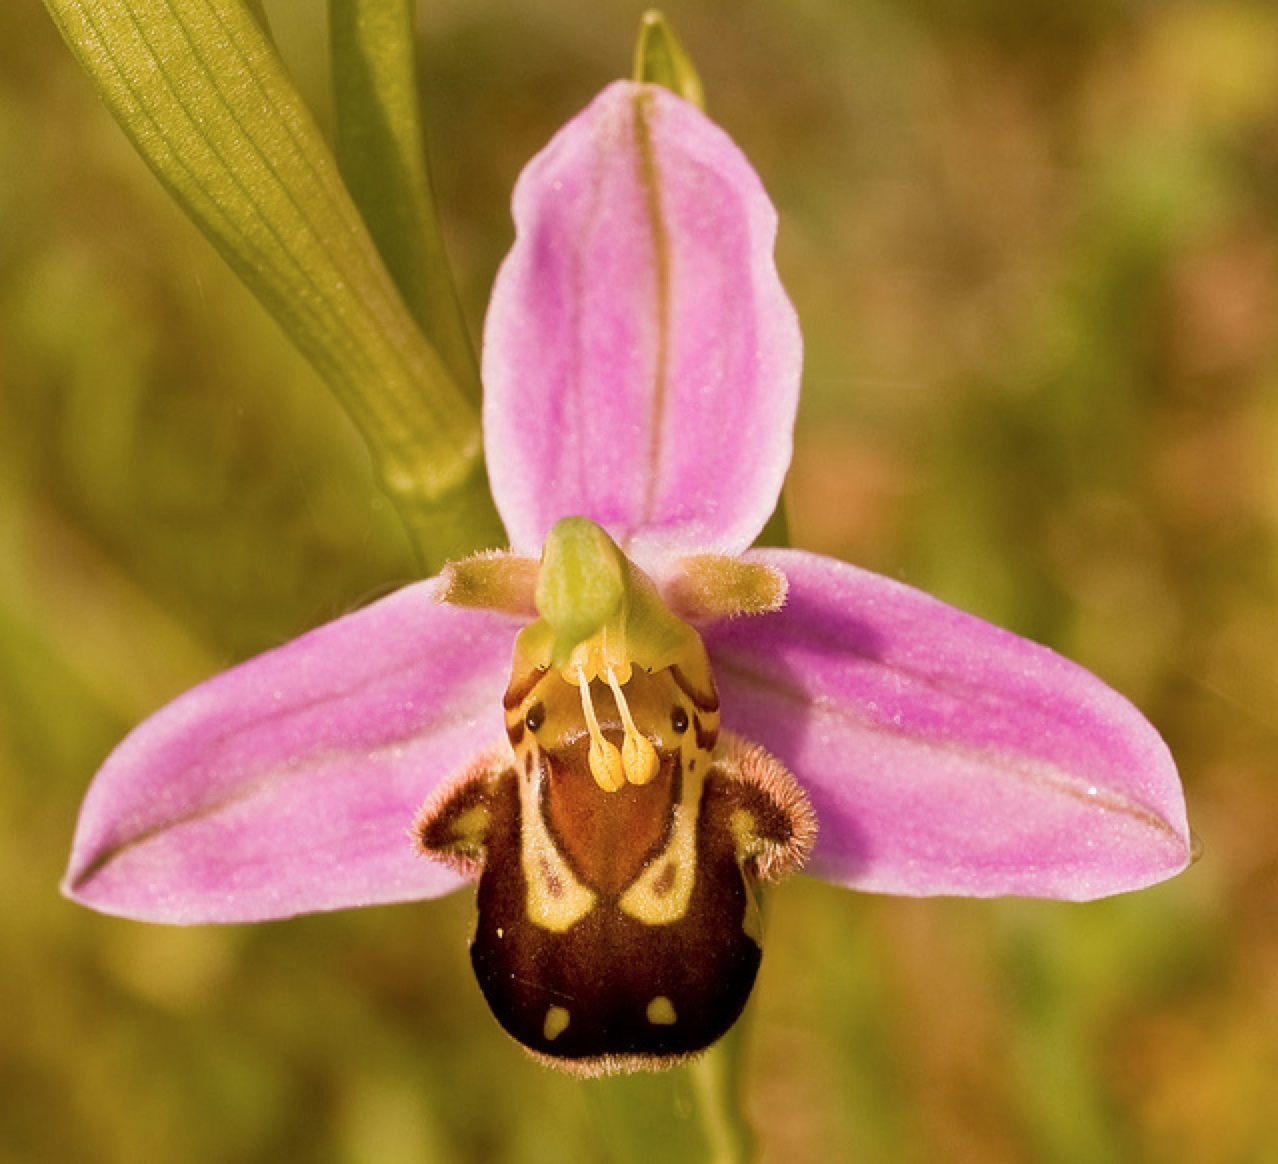 Les photos montrent une orchidée avec un centre jaune vif et des pétales blancs.